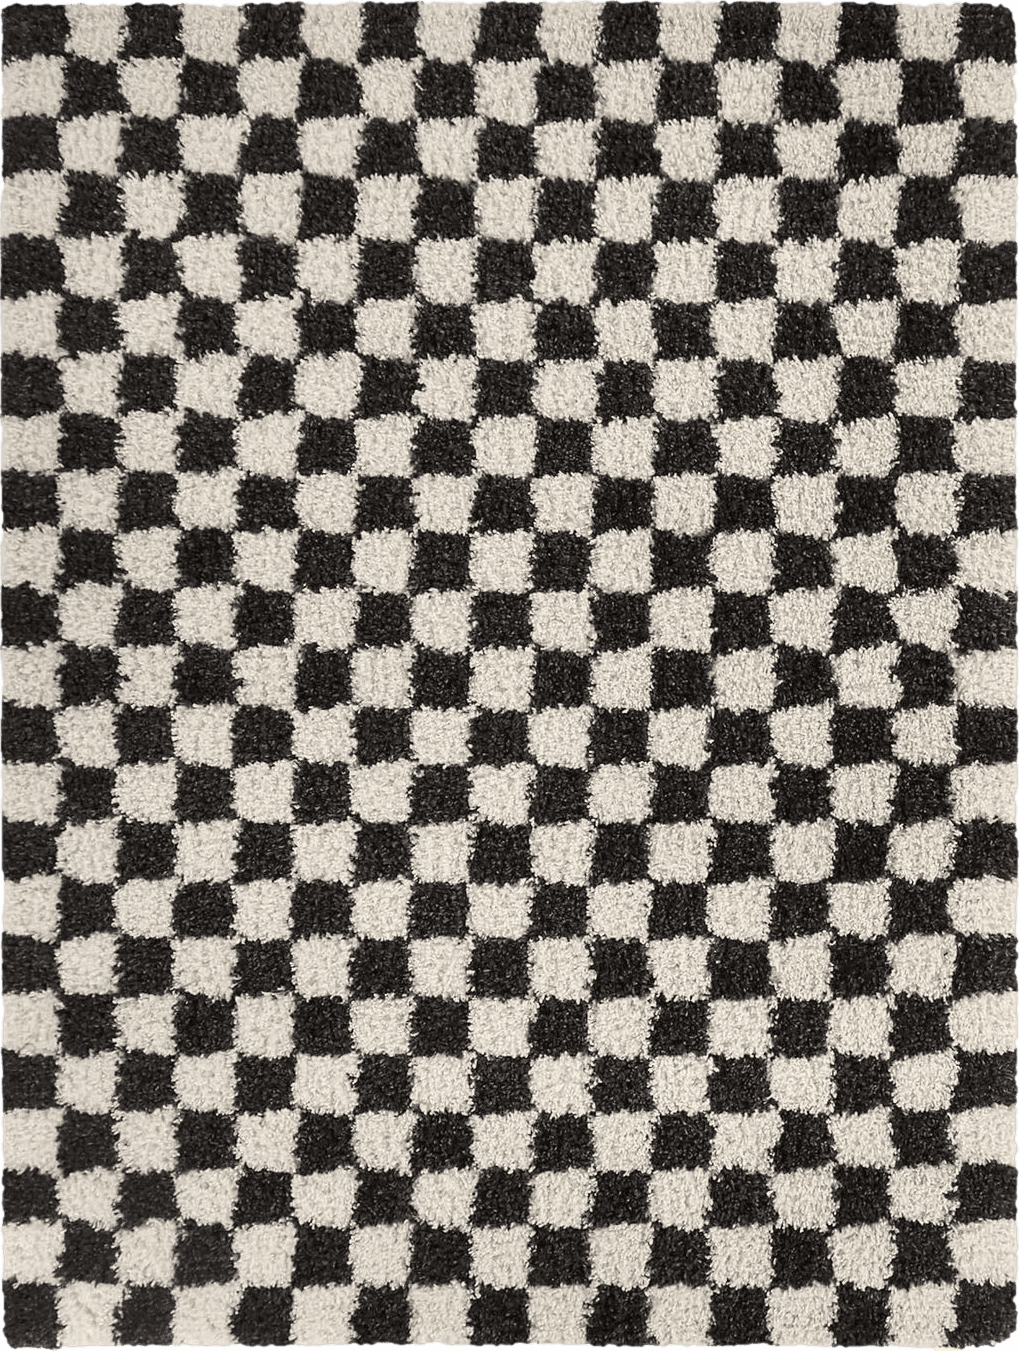 Balta Rugs Oslo Checkered Shag Rug, Black, 5' 3" x 7'